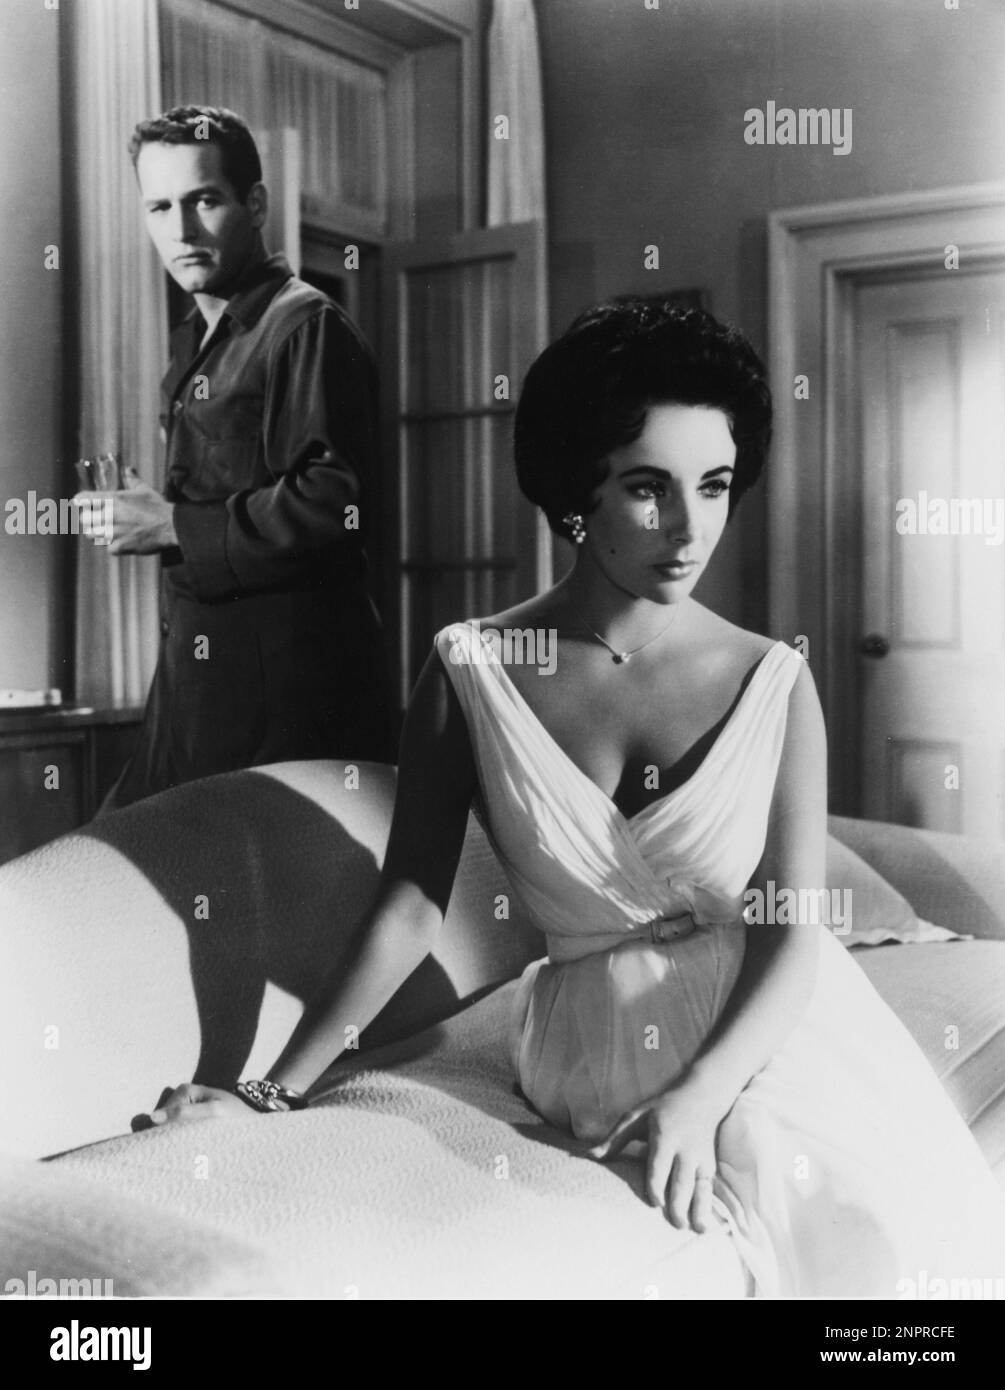 1958 : The movie actress ELIZABETH TAYLOR ( London , England 1932 ) and PAUL NEWMAN  in THE CAT ON A HOT TIN ROOF ( La gatta sul tetto che scotta ) by Richard Brooks , from a play by Tennessee Williams - CINEMA - portrait - ritratto  - innamorati - amanti - lovers - marito e moglie - husband and wife - pigiama - pajama - drink   - spalla - spalle - shoulders  - Liz  - collana - necklace - orecchino - orecchini - eardrops - belt - cintura - abito vestito bianco - white dress - couch - divano - GAY - homosexuality - omosessualità - omosessuale - homosexual ----  Archivio GBB Stock Photo